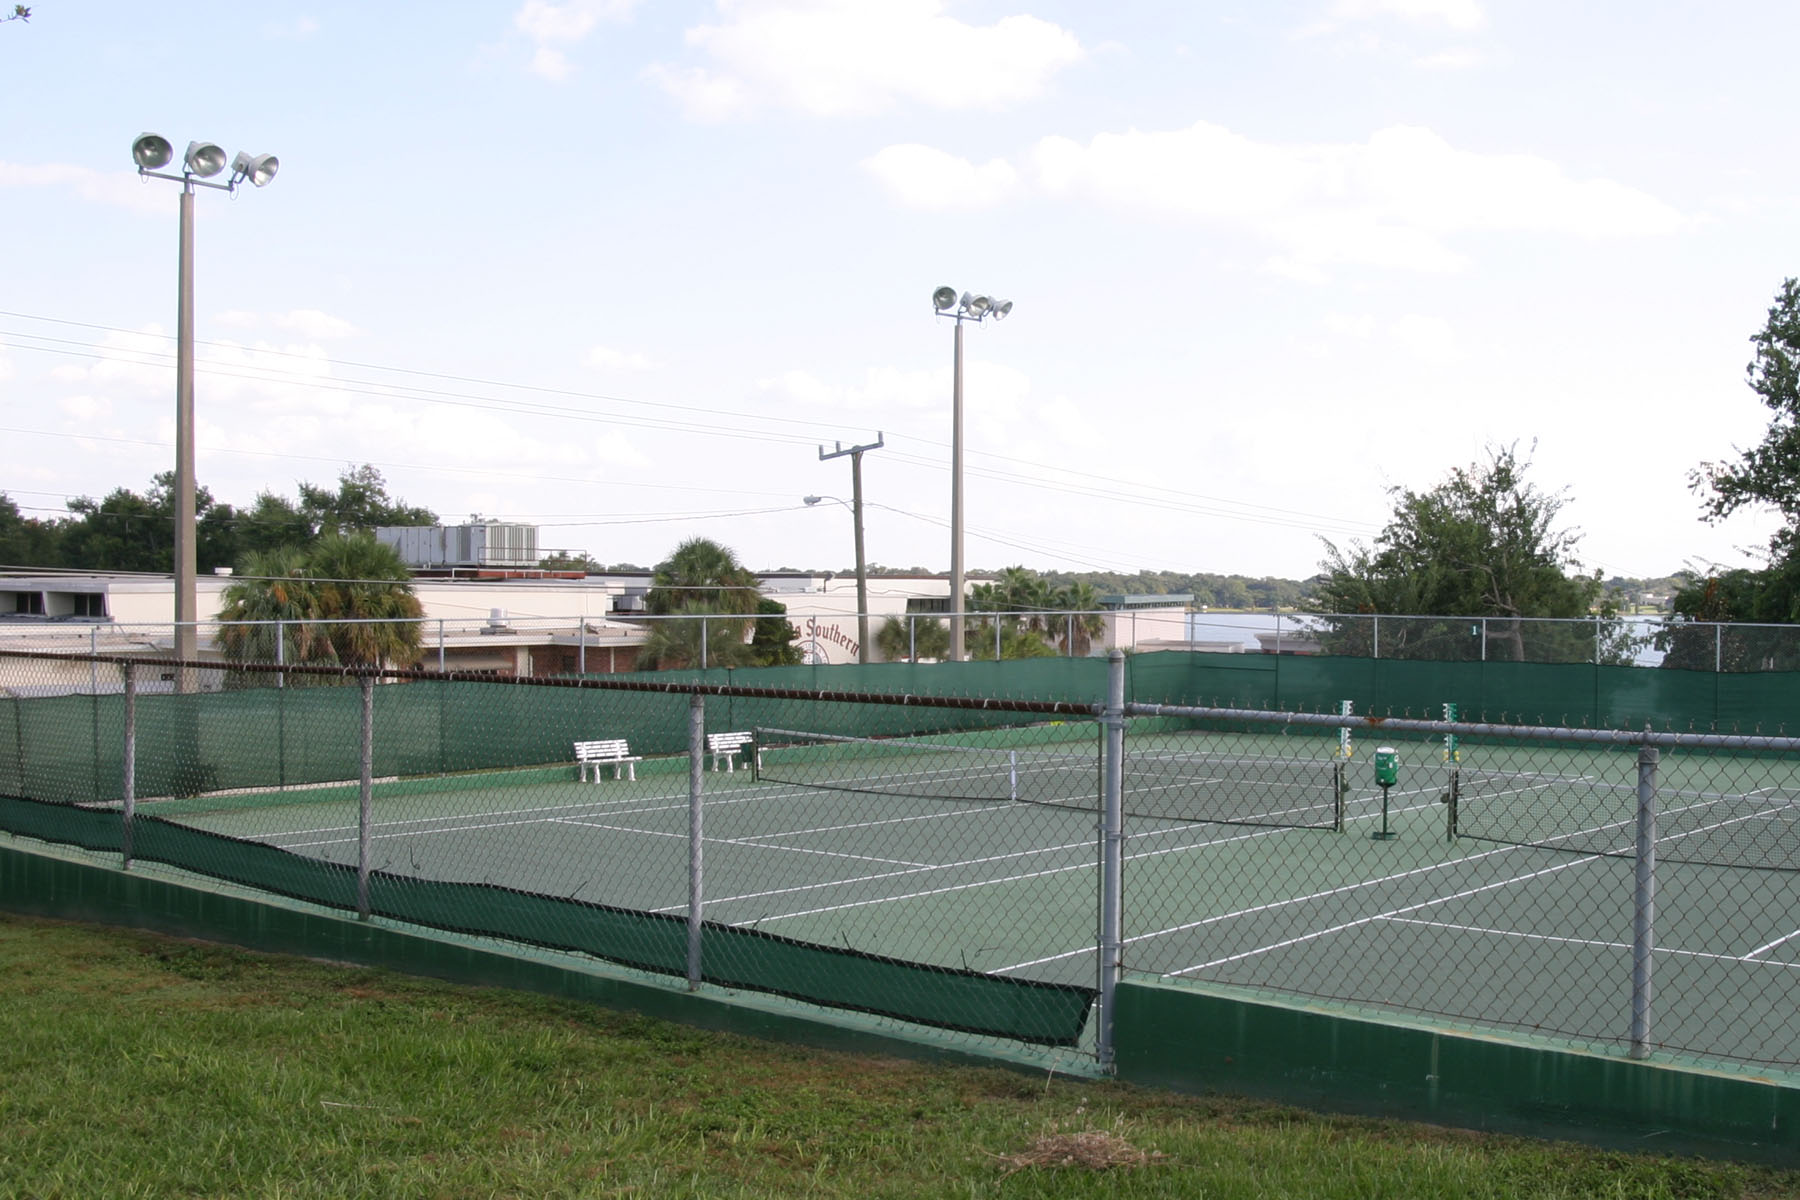 Beerman Tennis Complex